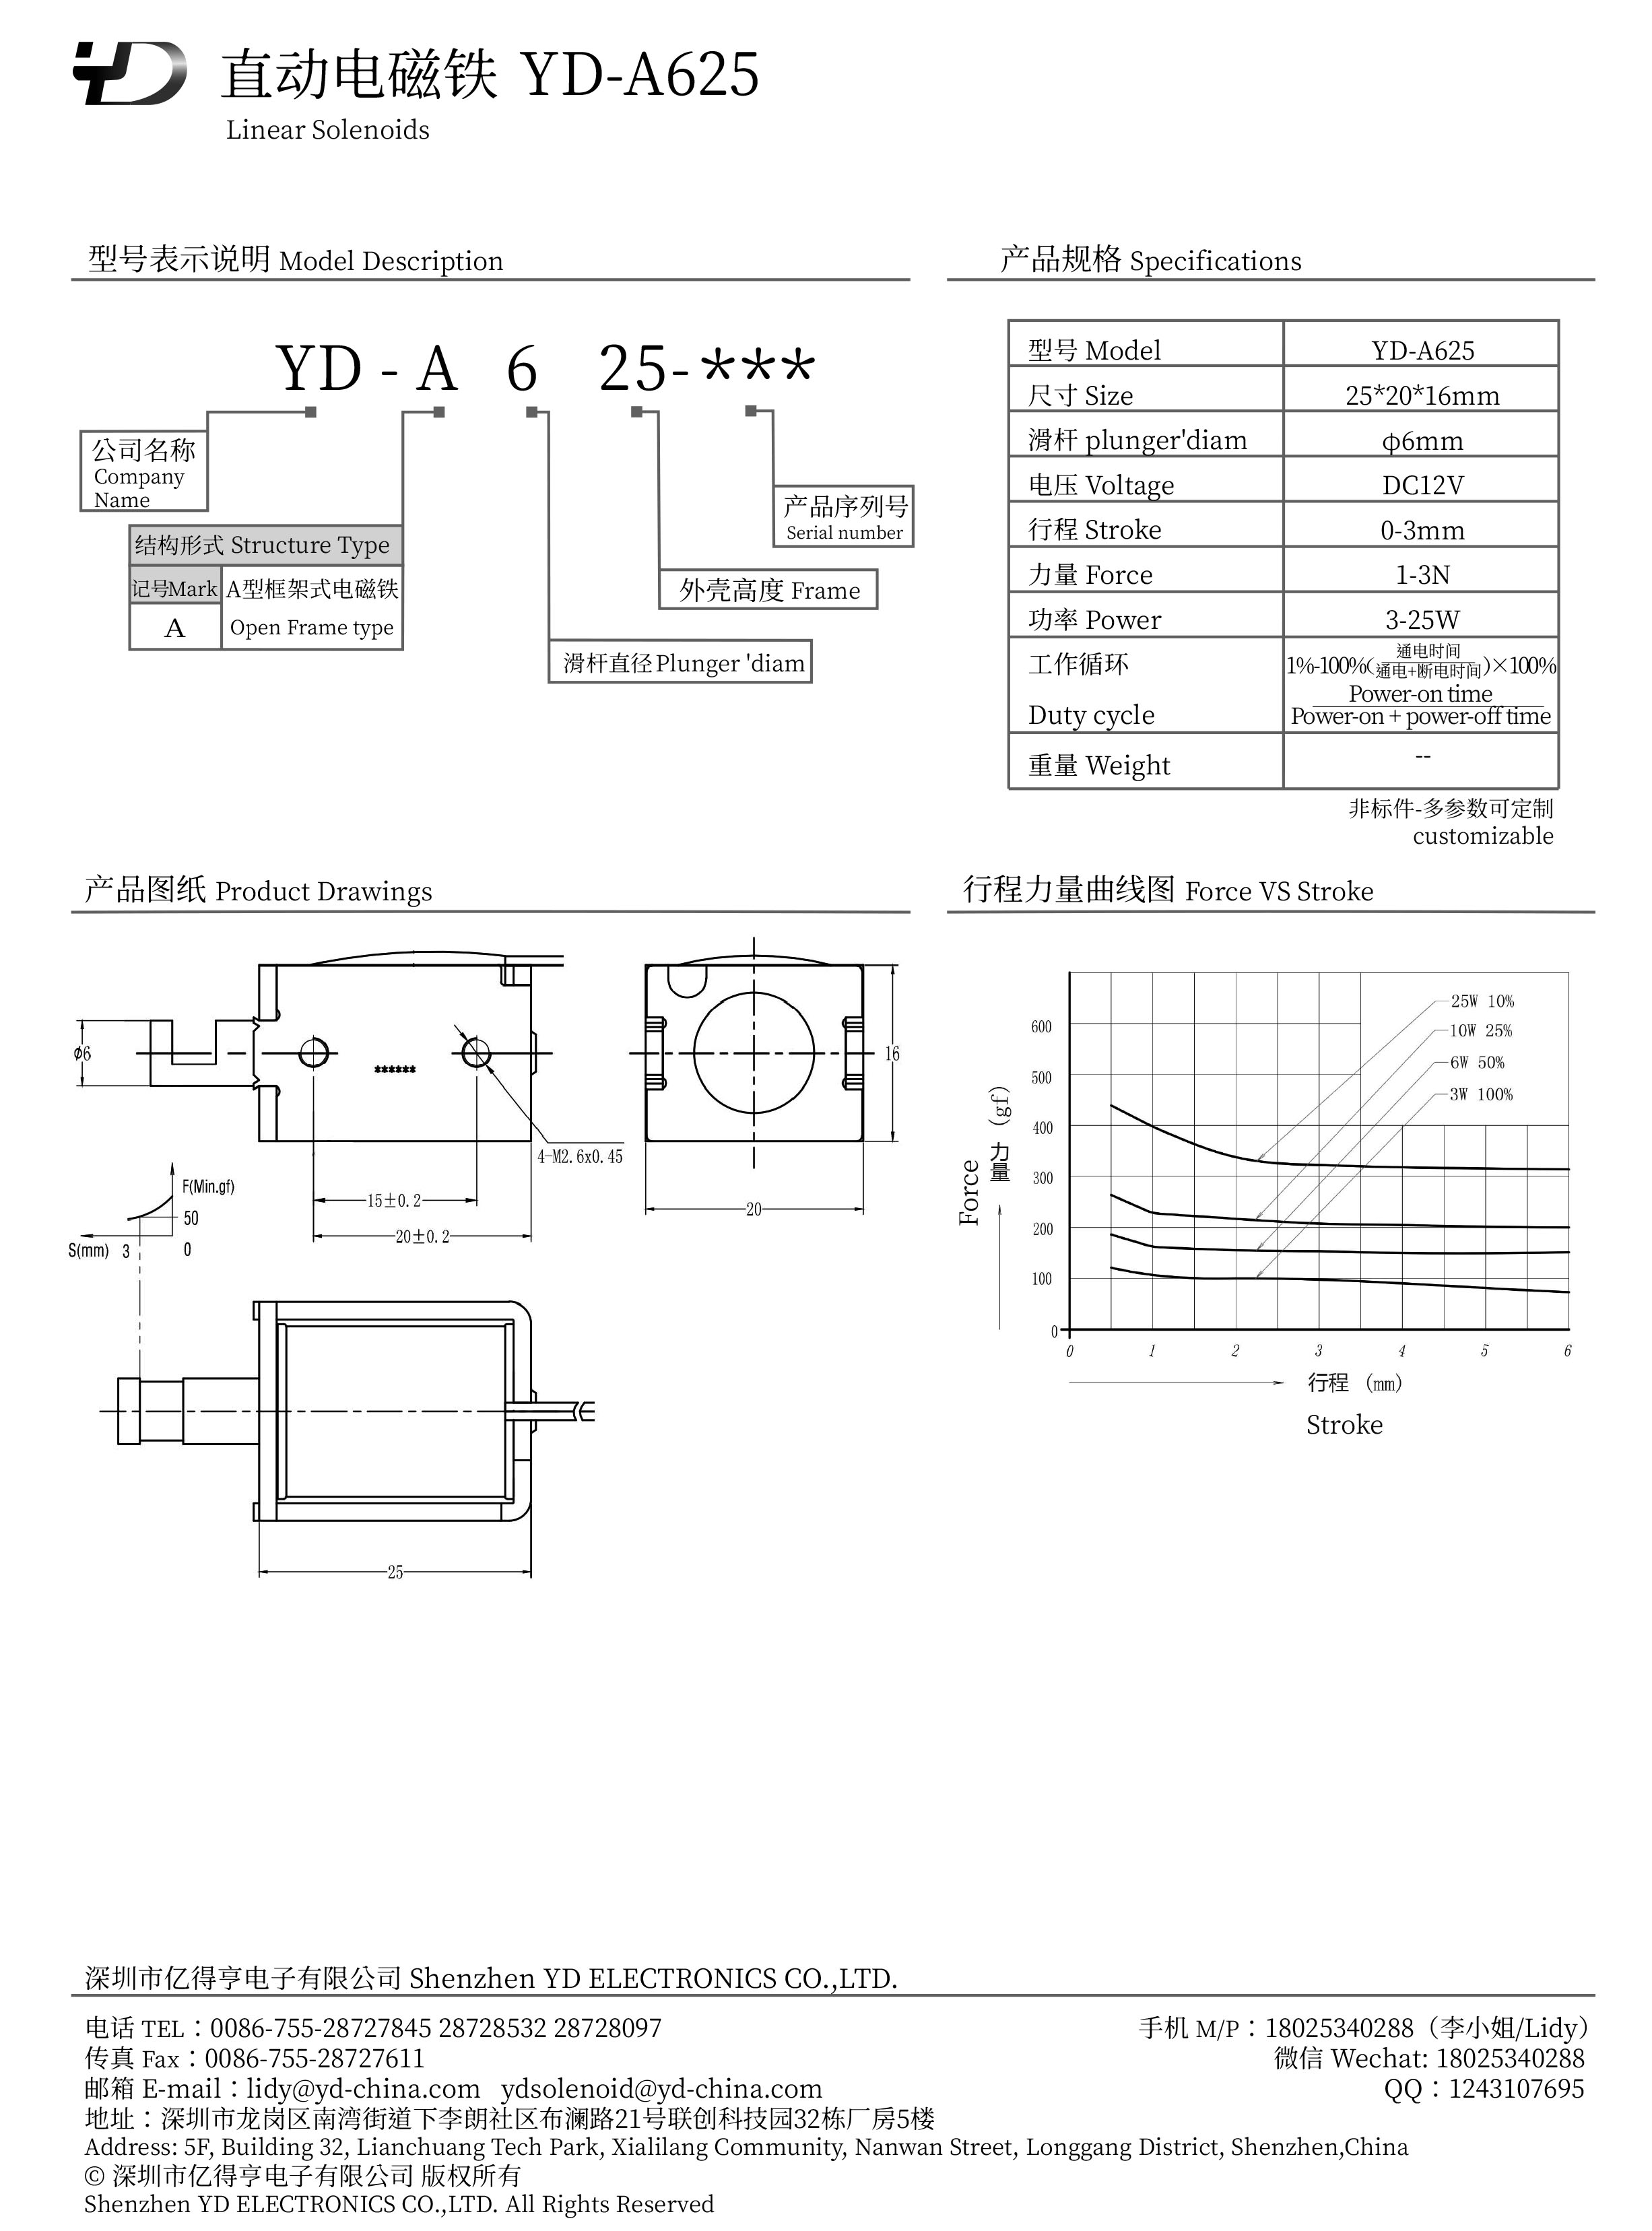 YD-A625-PDF.jpg